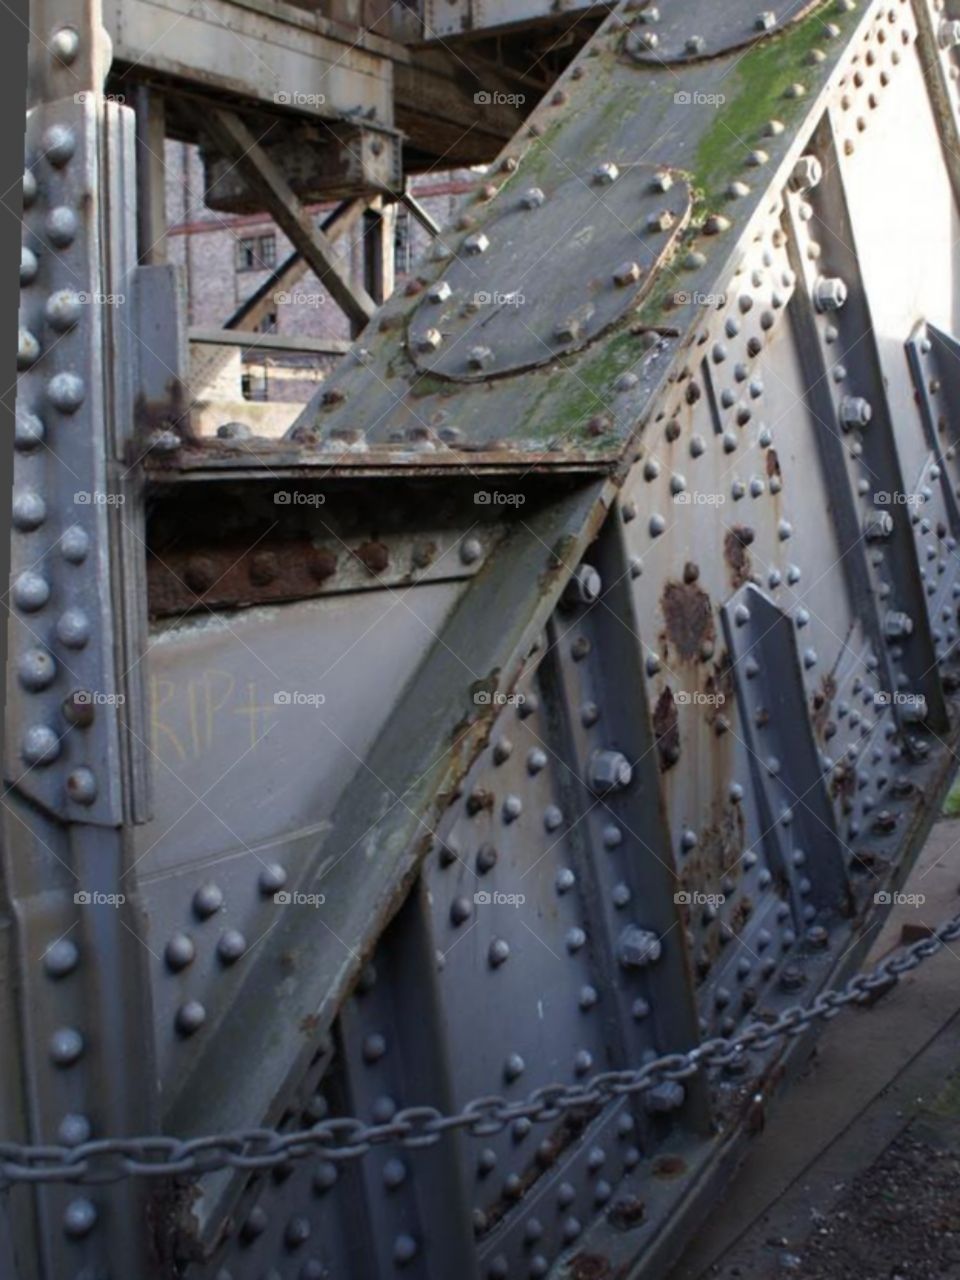 Iron bridge